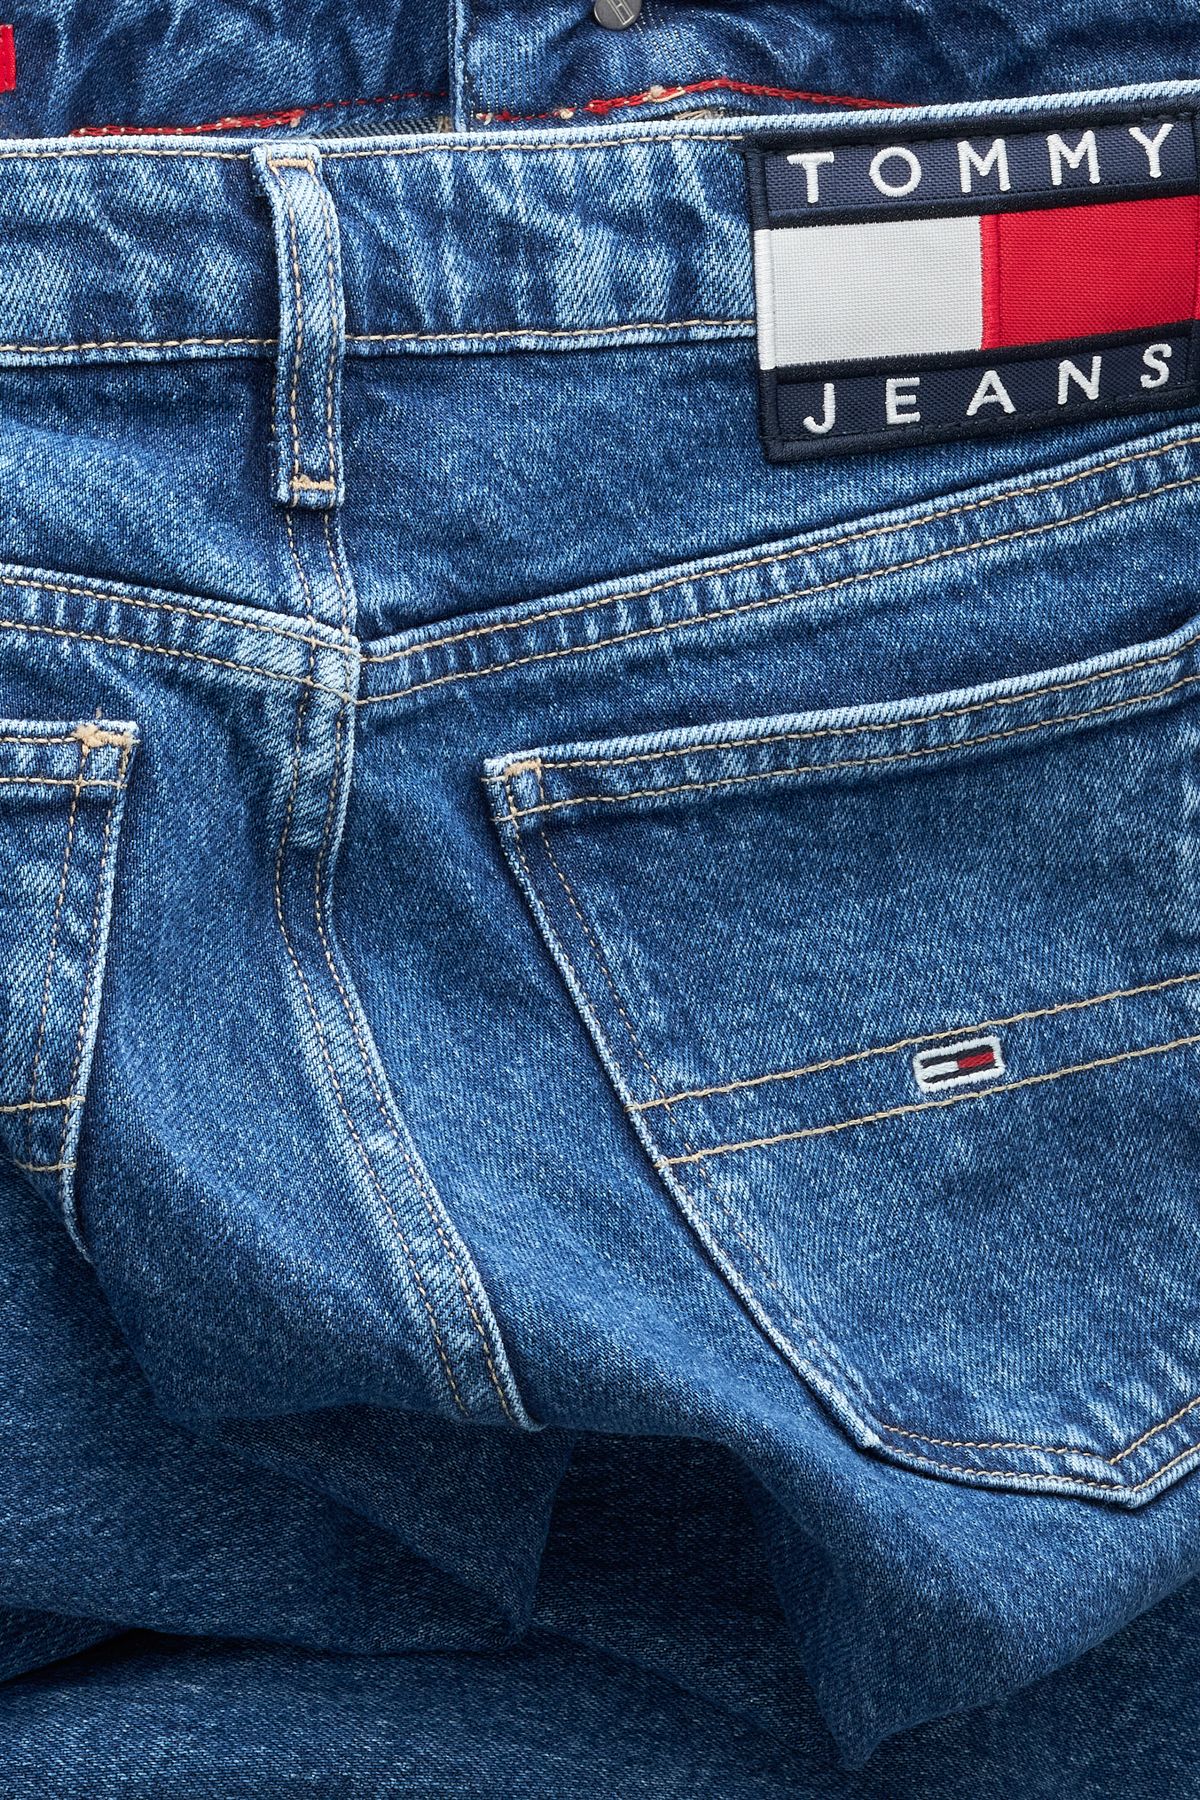 Tommy Hilfiger Jeans - Dark blue - Wide leg - Trendyol | Weite Jeans